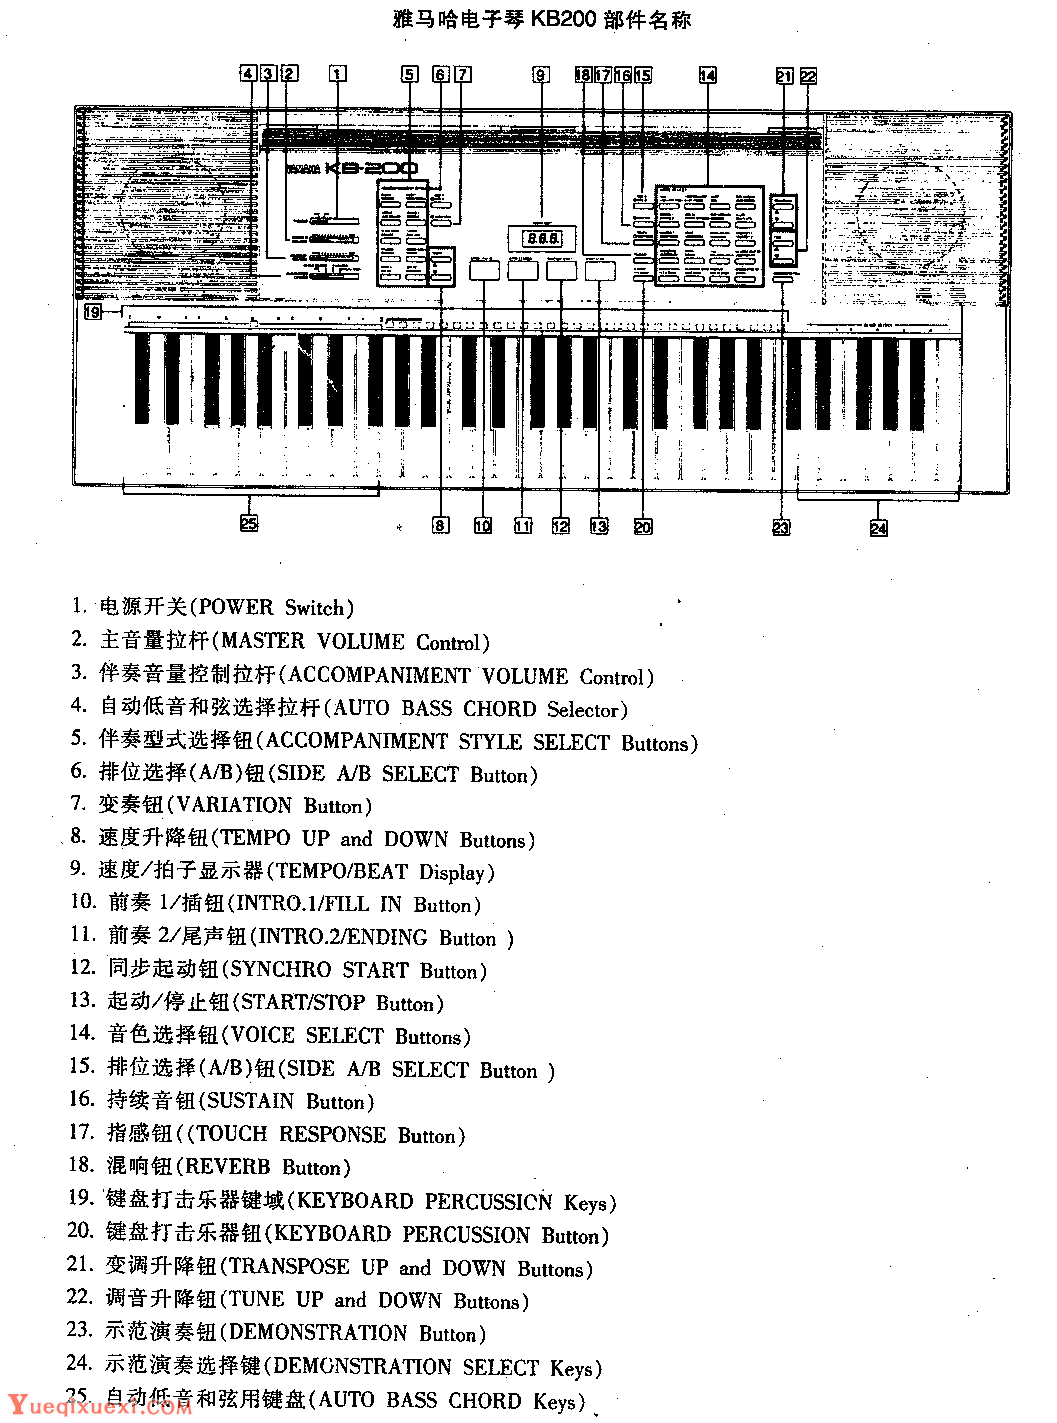 电子琴结构及部件名称2